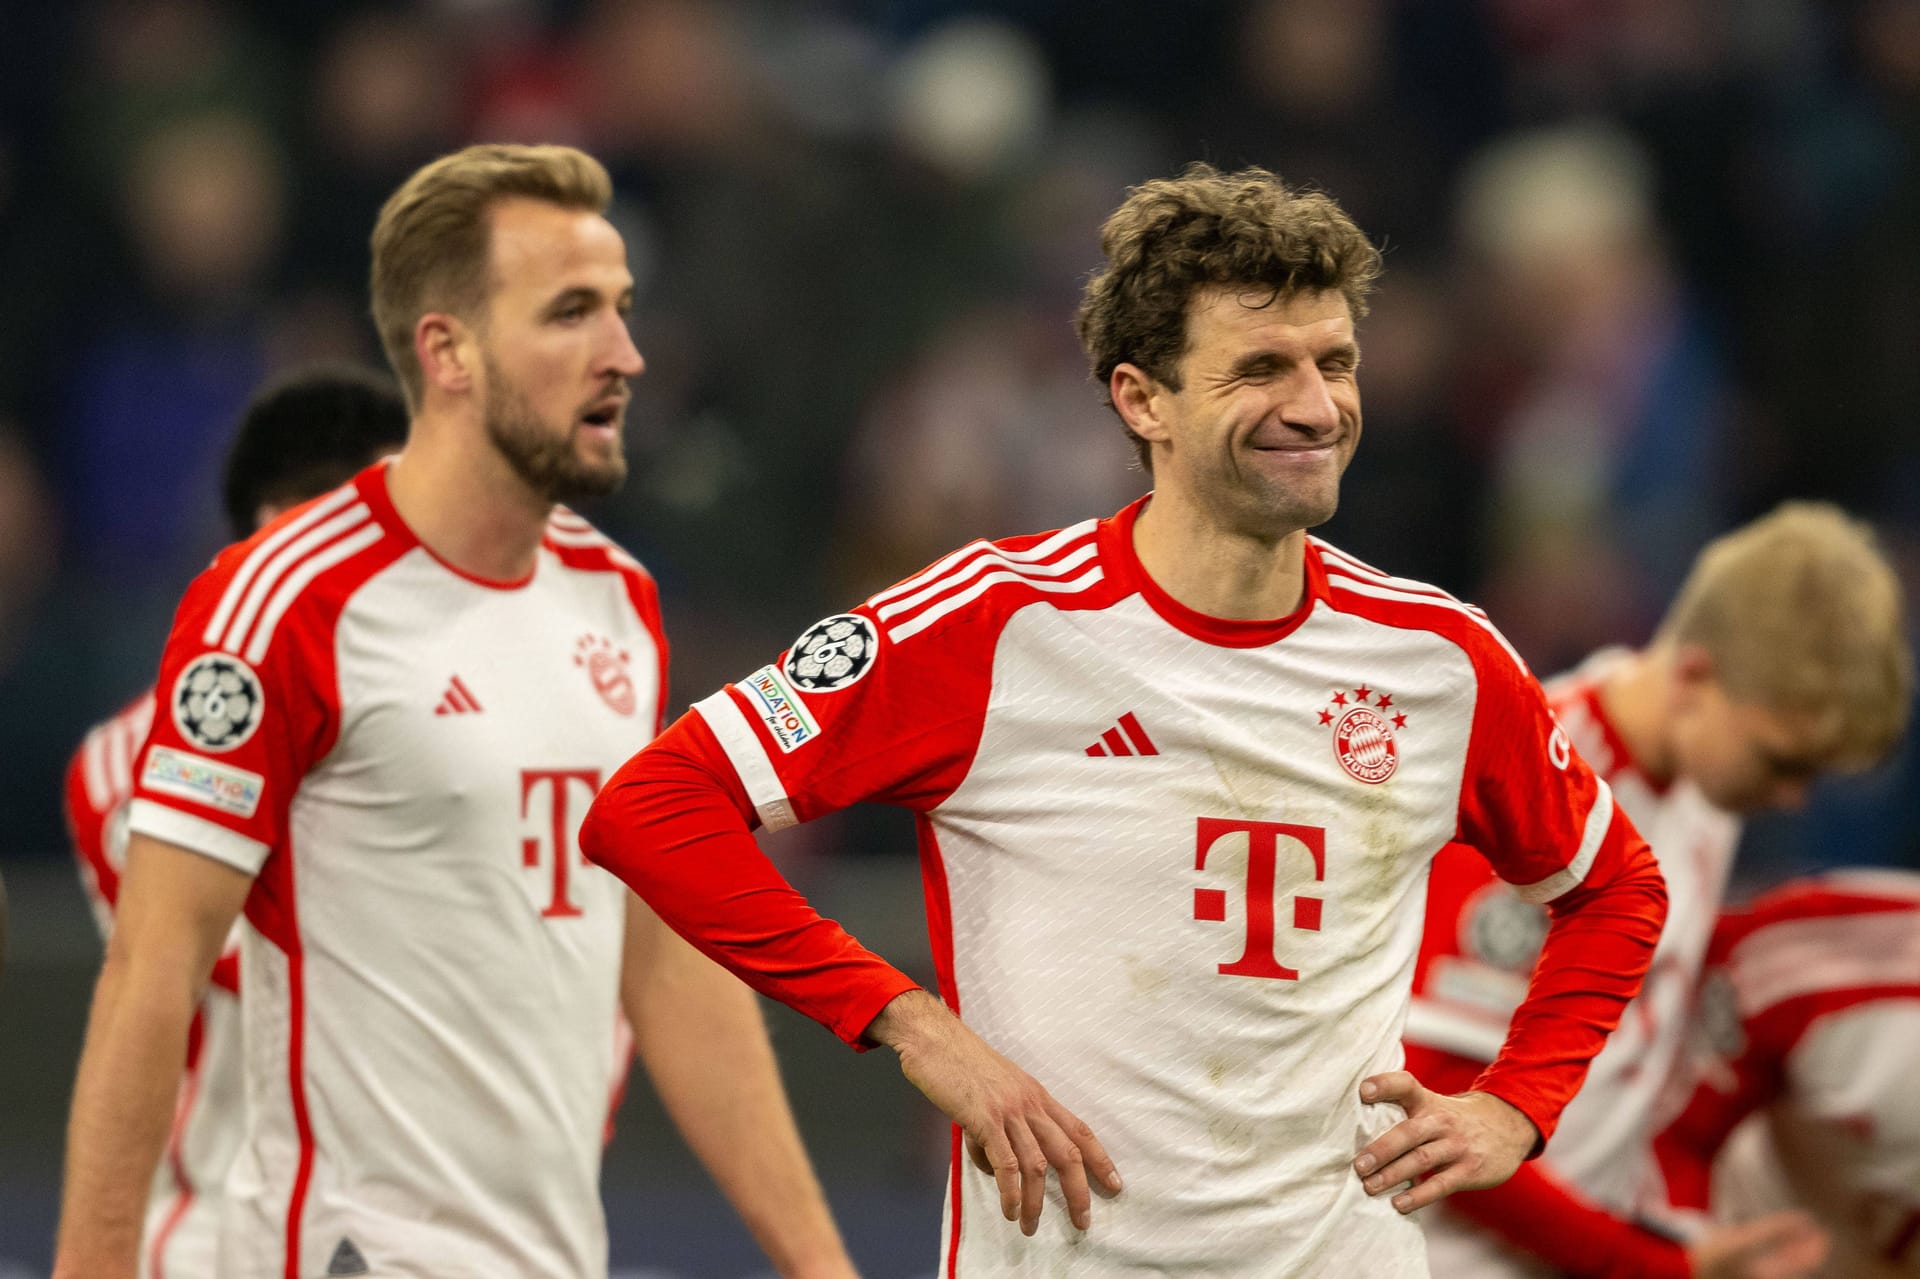 Nach 17 Erfolgen in der Gruppenphase in Folge reißt die Siegesserie des FC Bayern gegen Kopenhagen. Der Rekordmeister kommt in seinem Heimspiel gegen die Dänen nicht über ein 0:0 hinaus. Einige Stars spielen sich dabei dennoch in den Vordergrund. Die Einzelkritk.